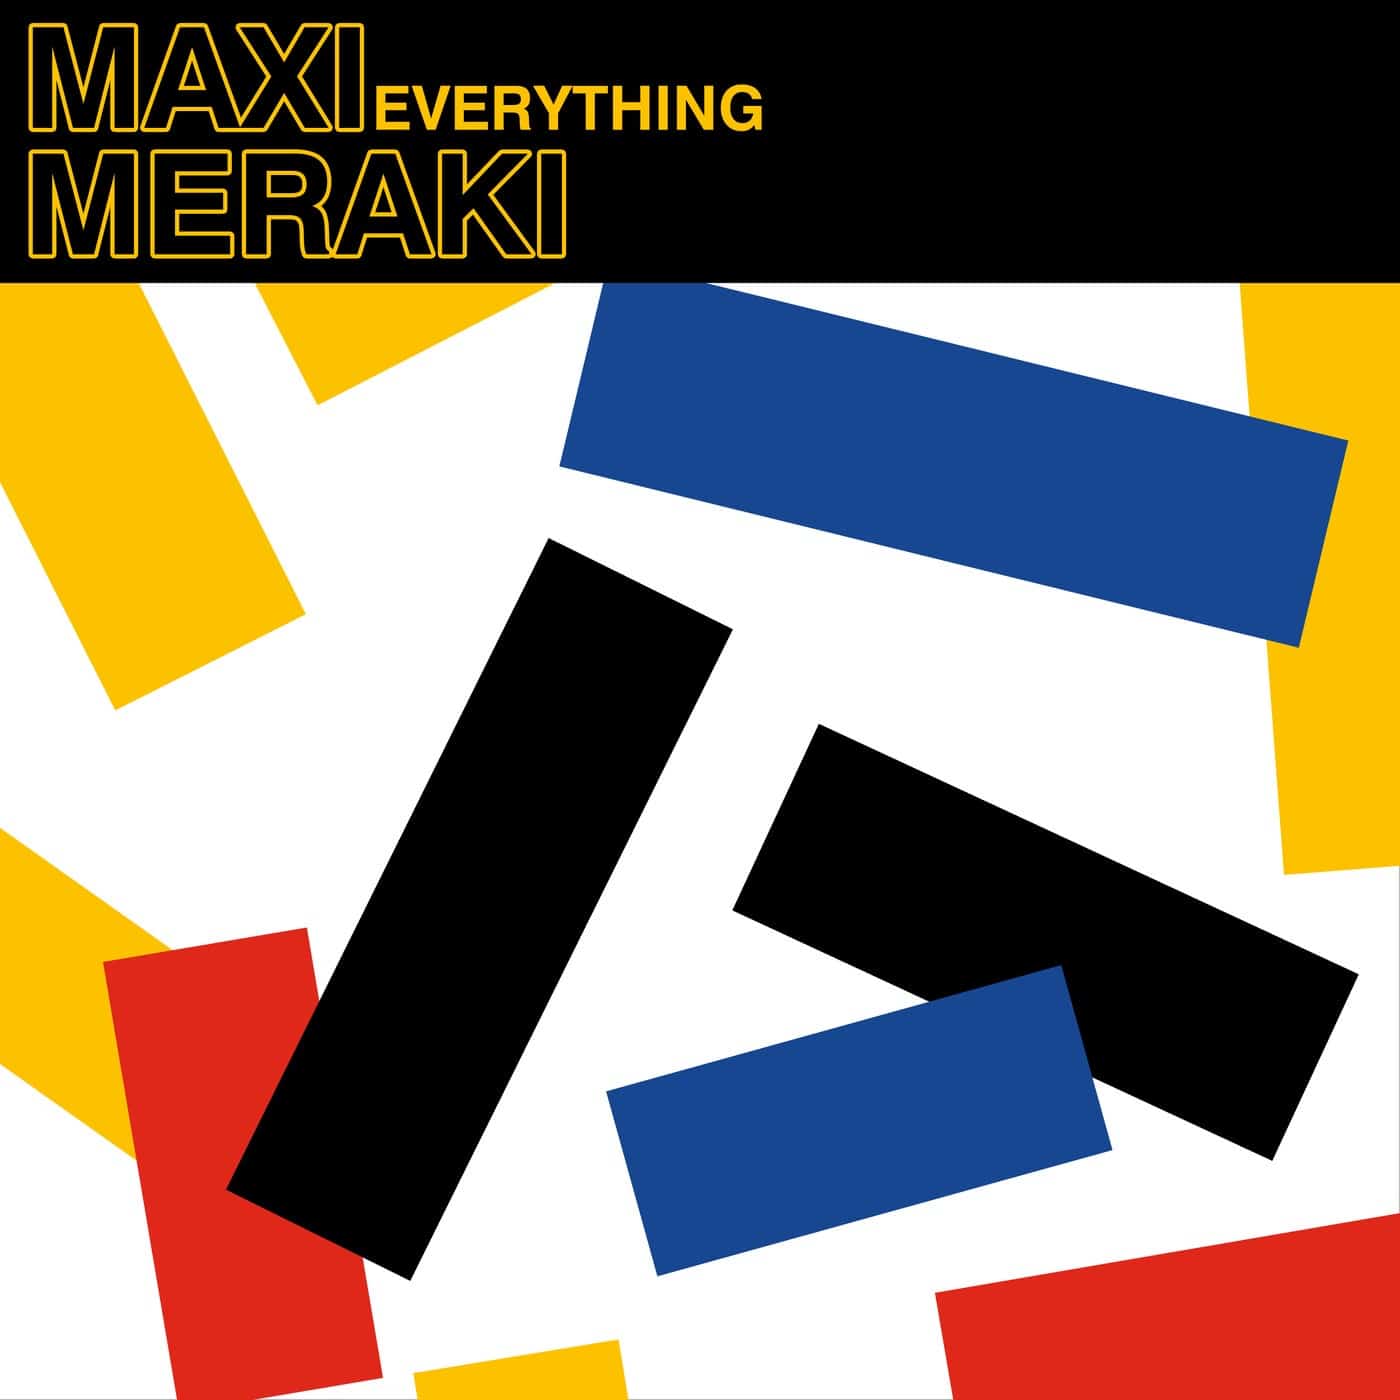 Download MAXI MERAKI - Everything on Electrobuzz